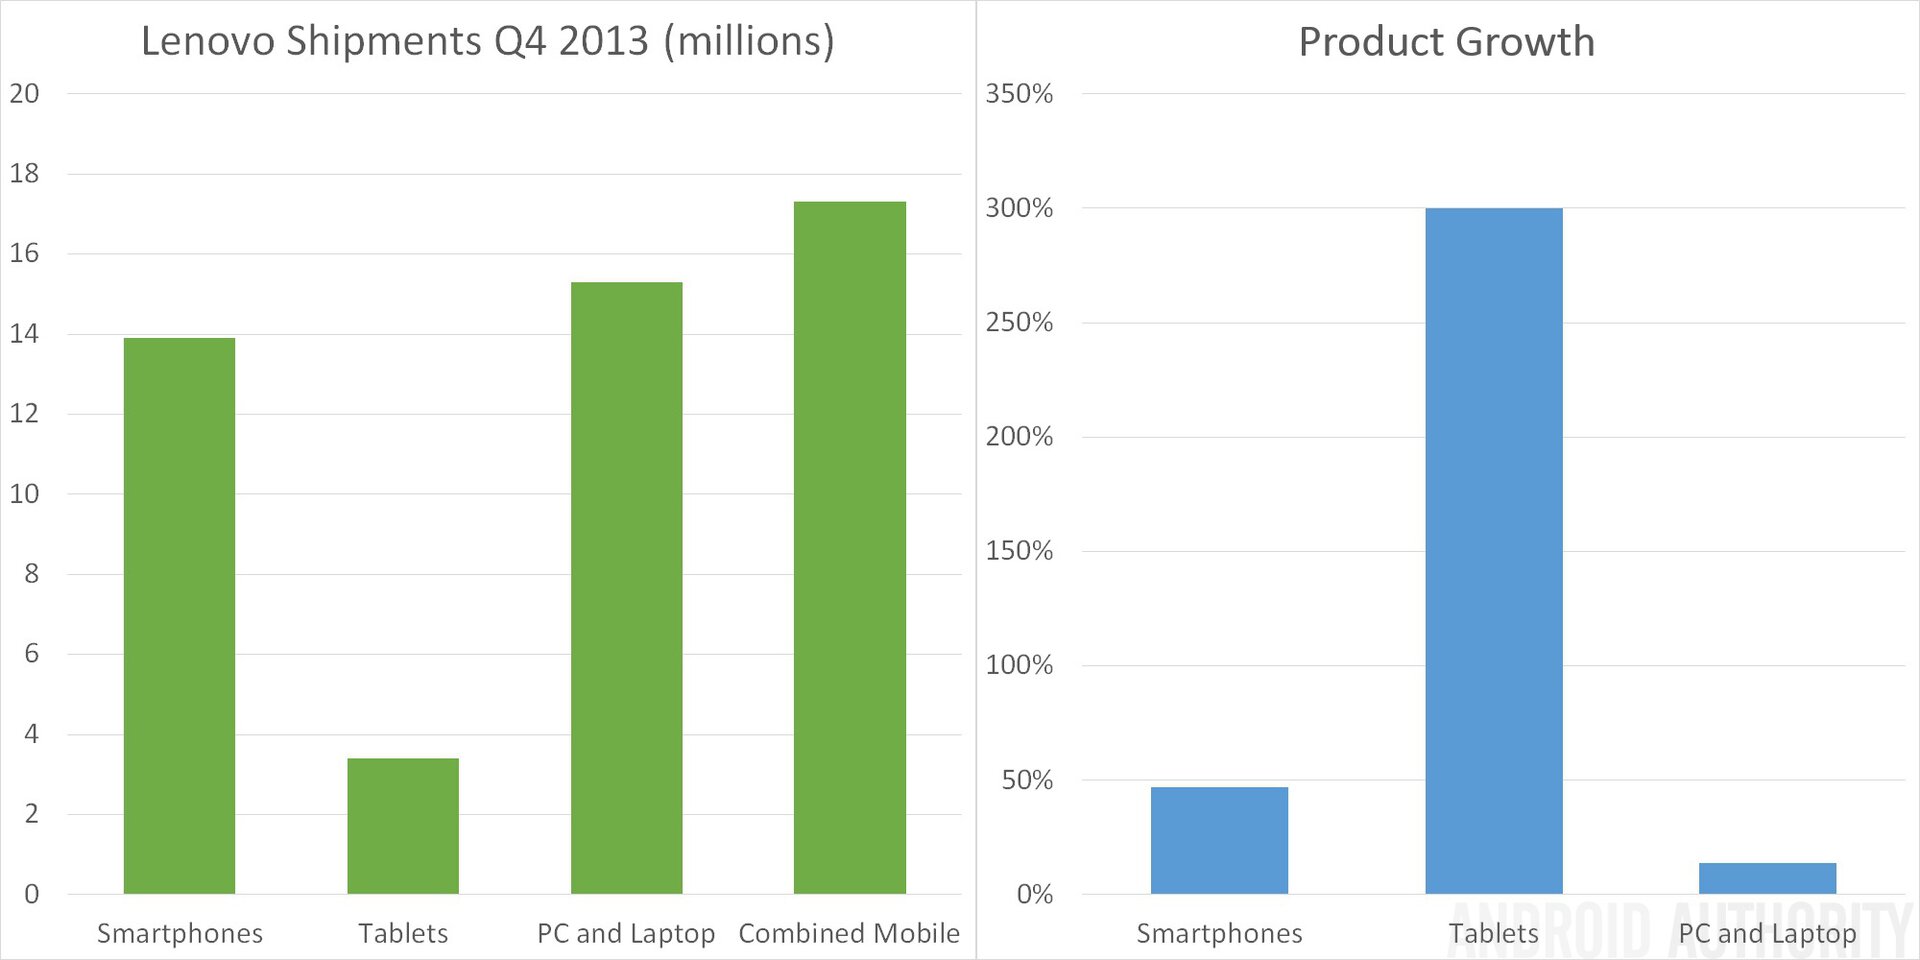 Lenovo Shipments and Growth Q4 2013